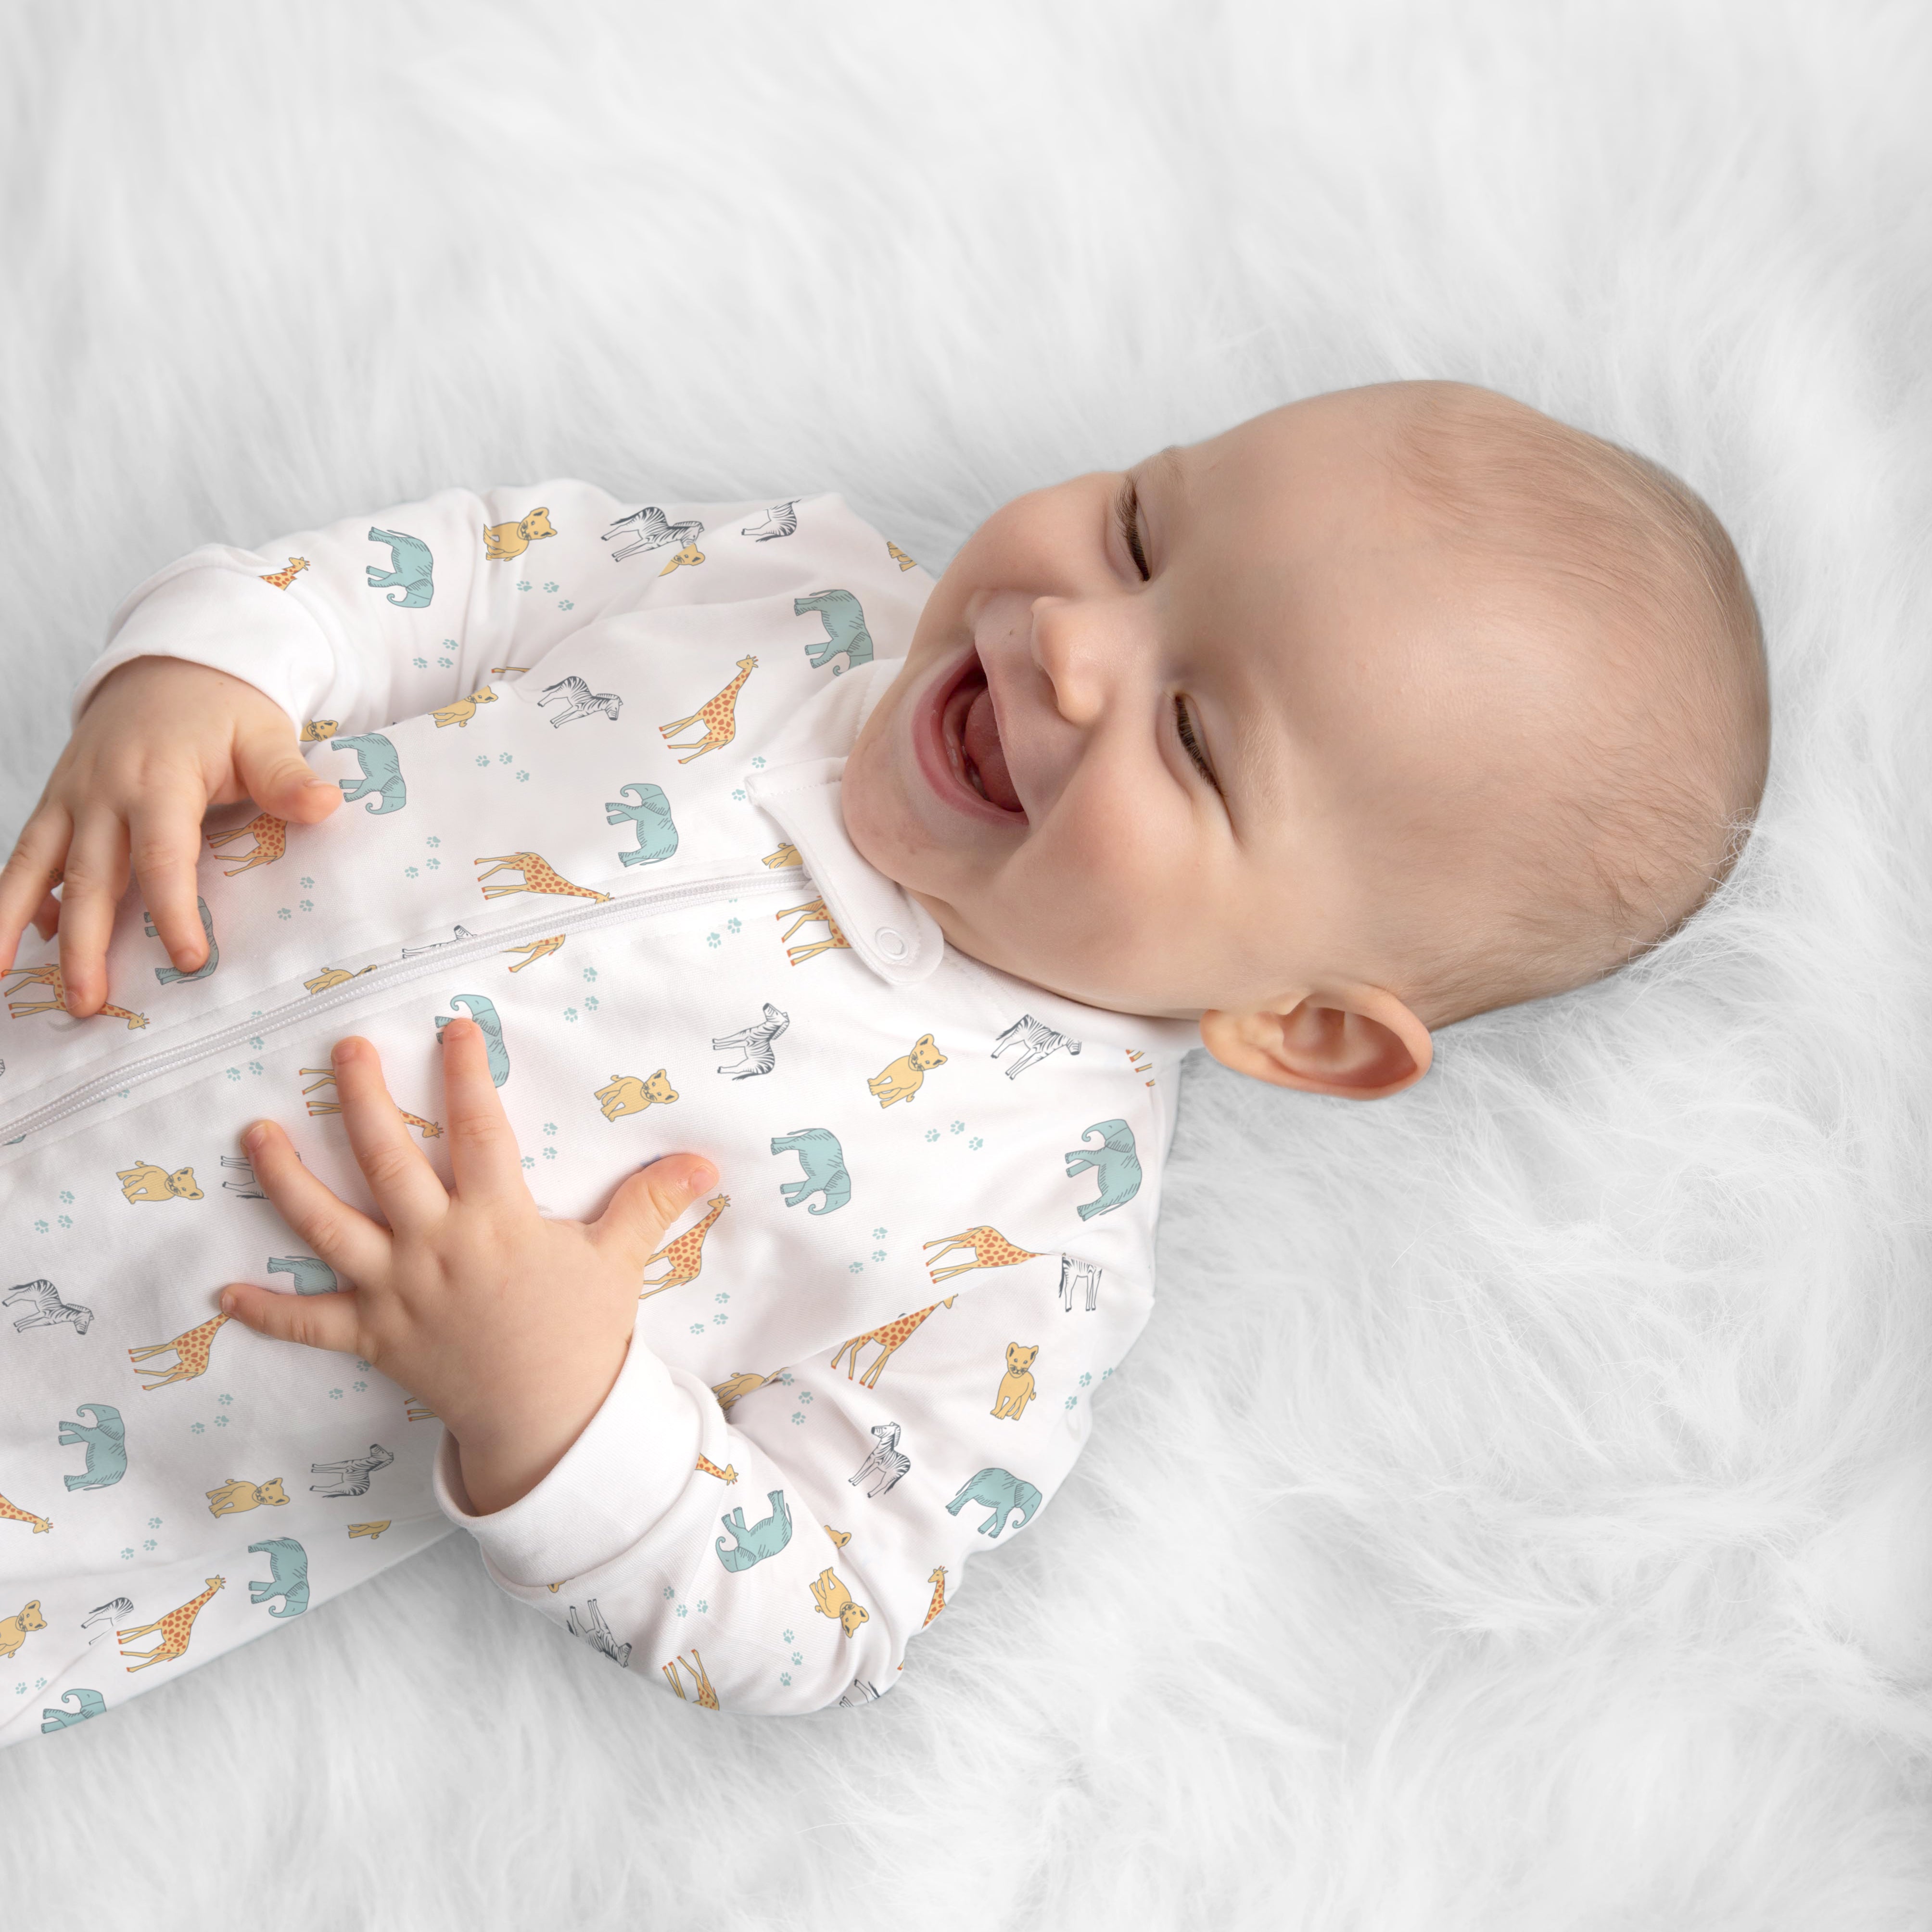 How Long Do Babies Wear Newborn Clothes?